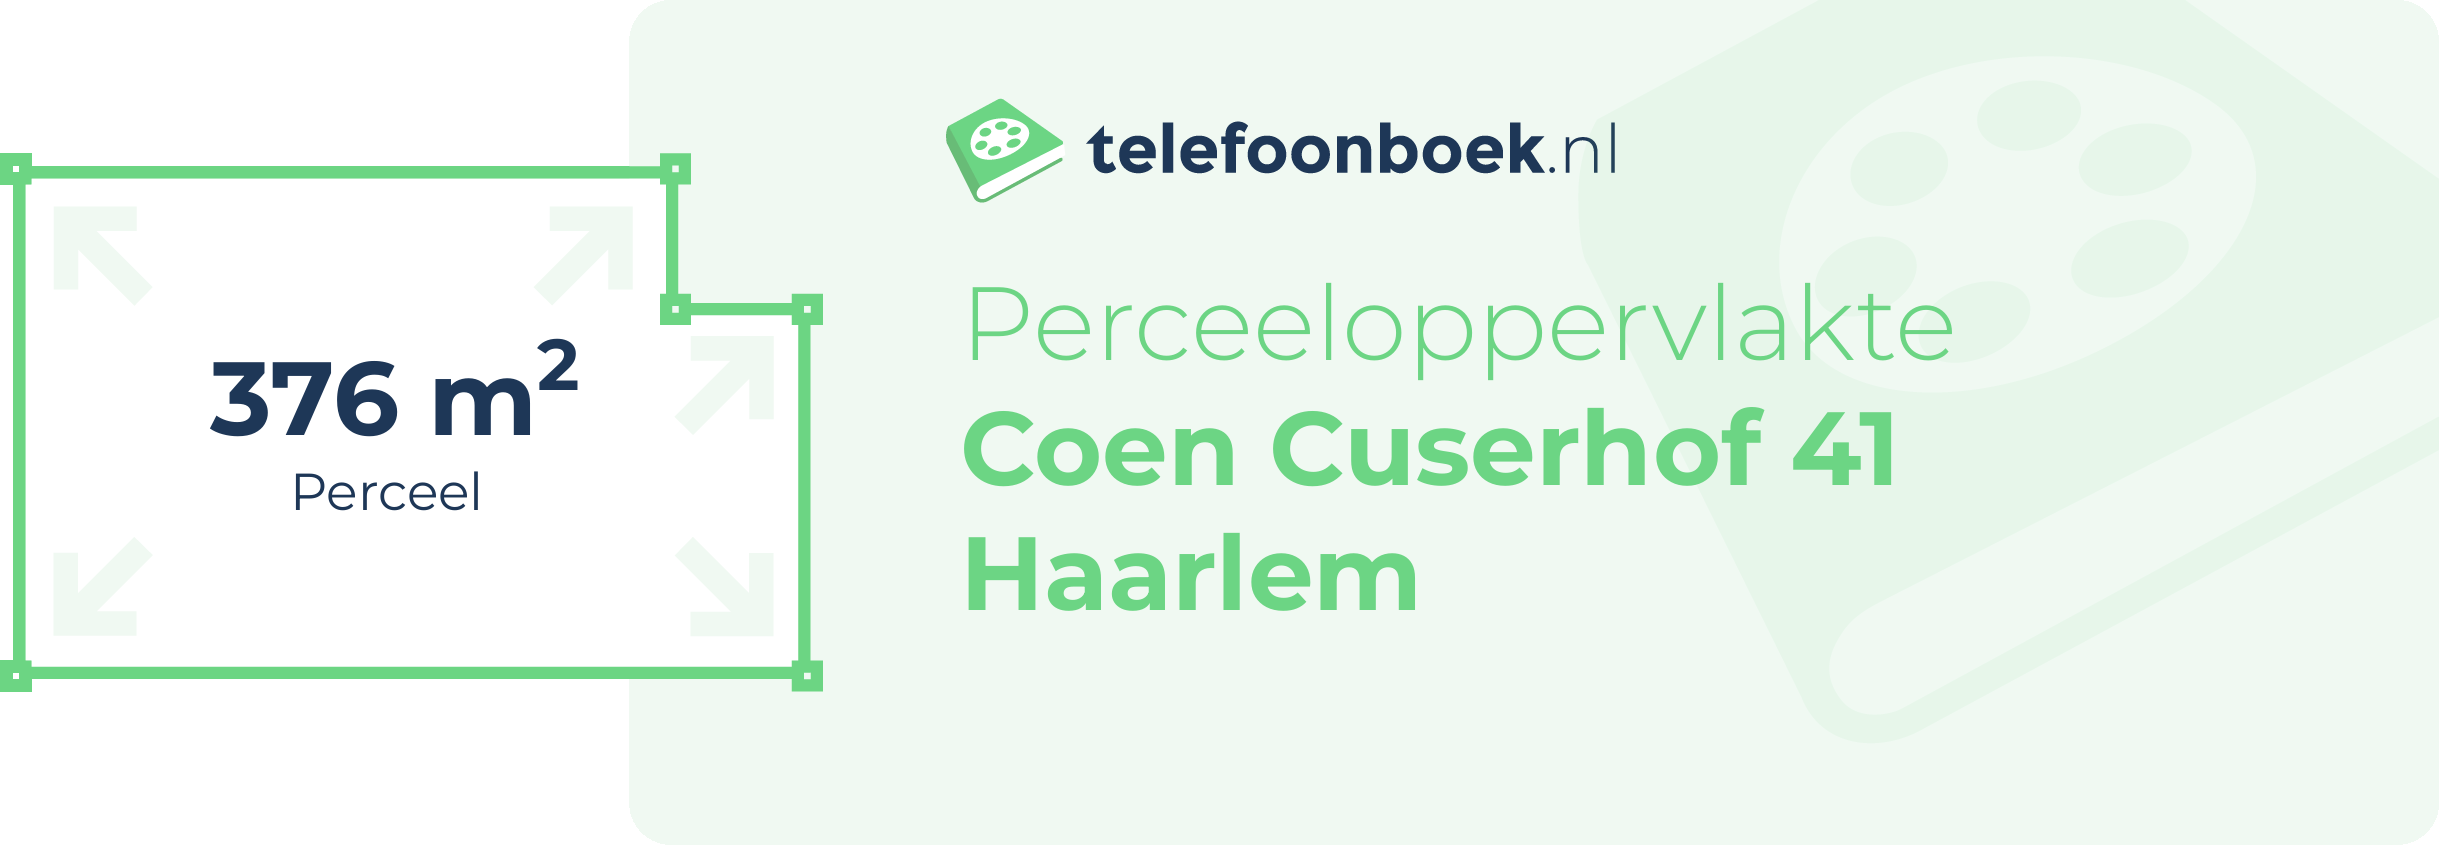 Perceeloppervlakte Coen Cuserhof 41 Haarlem